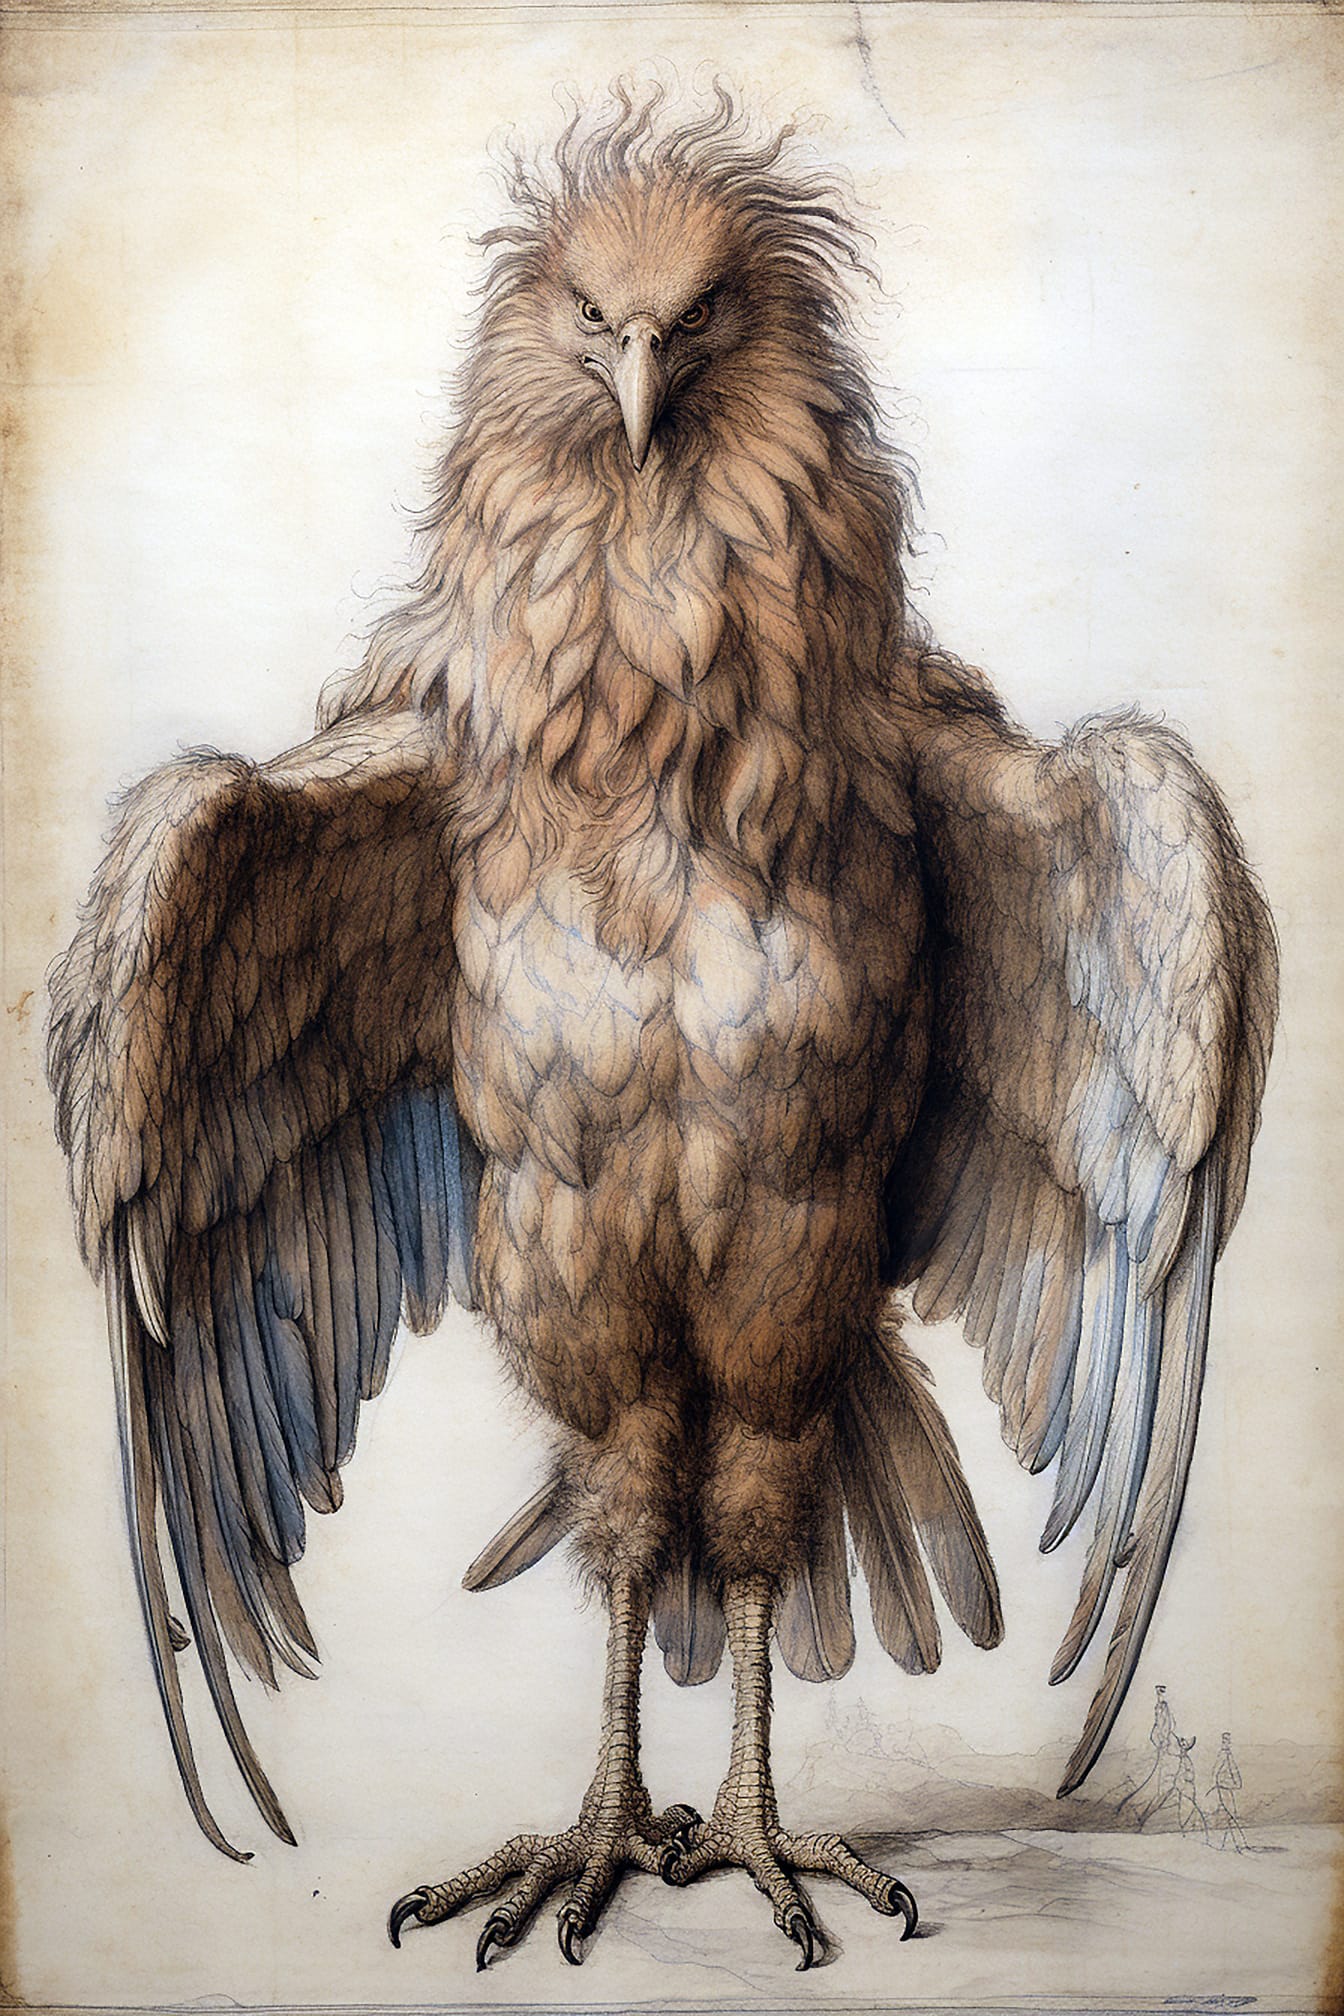 Disegno di arte al tratto dell’aquila in piedi con le ali alzate